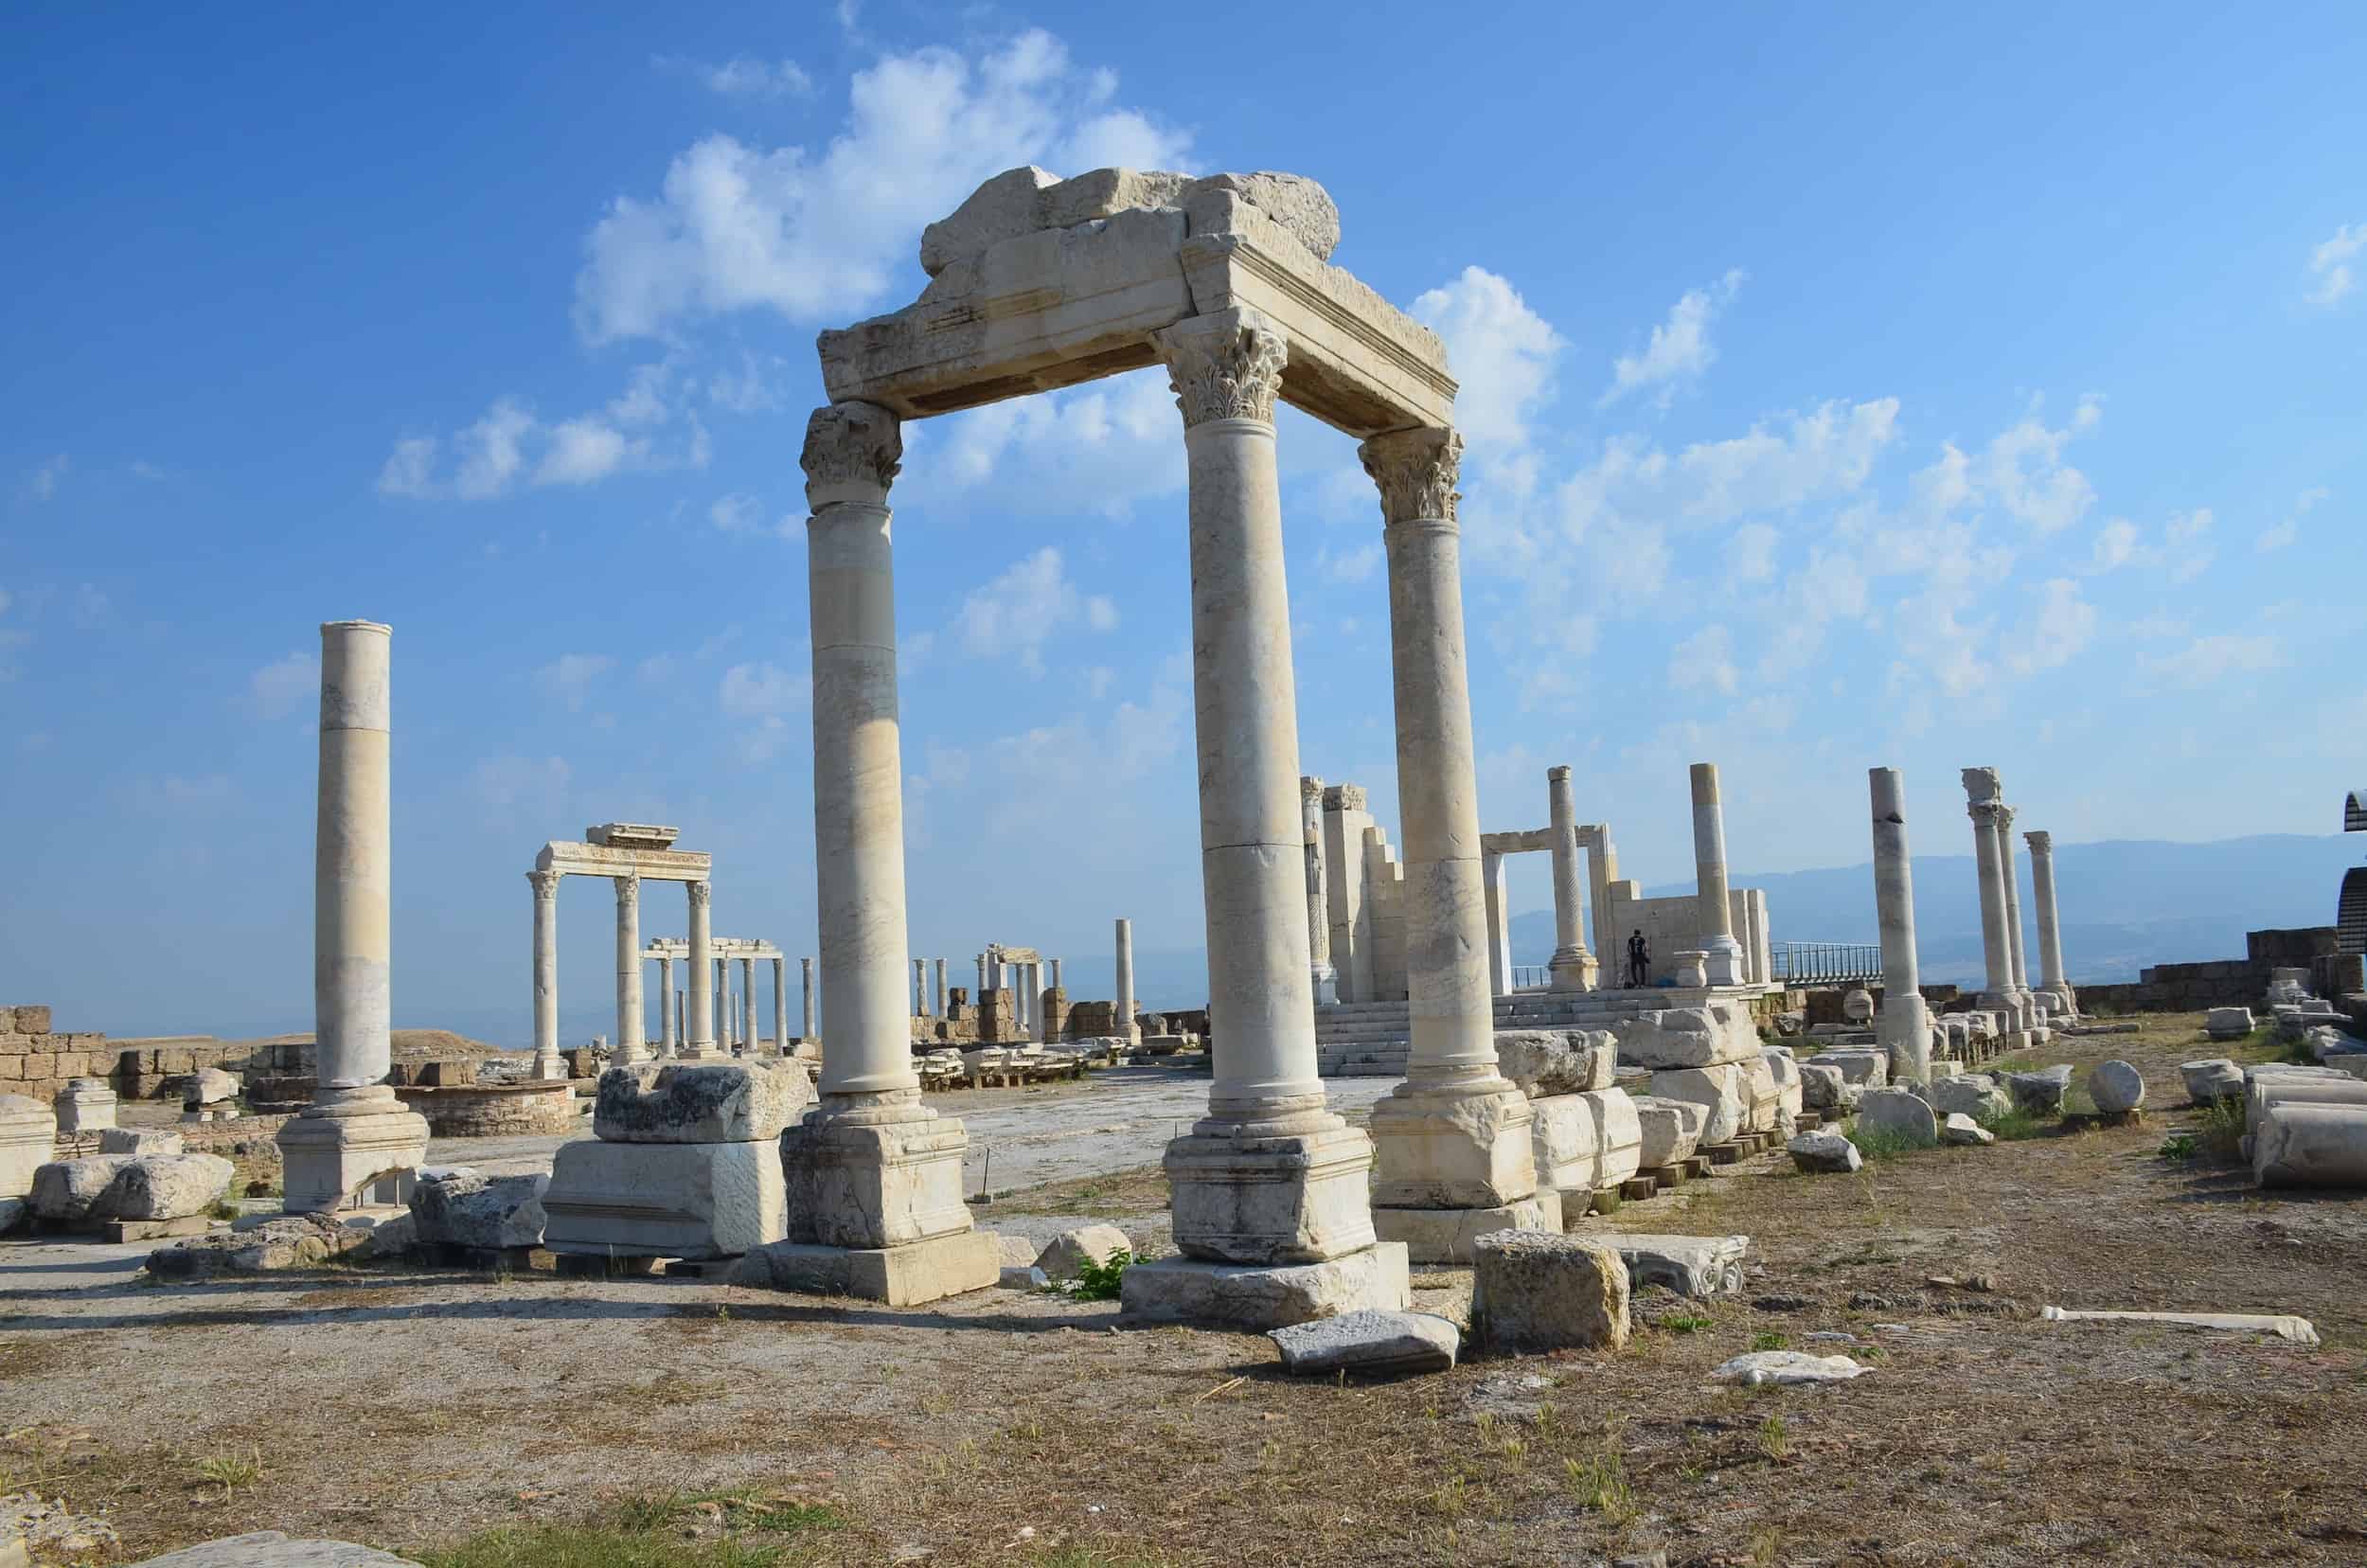 Temple A in Laodicea